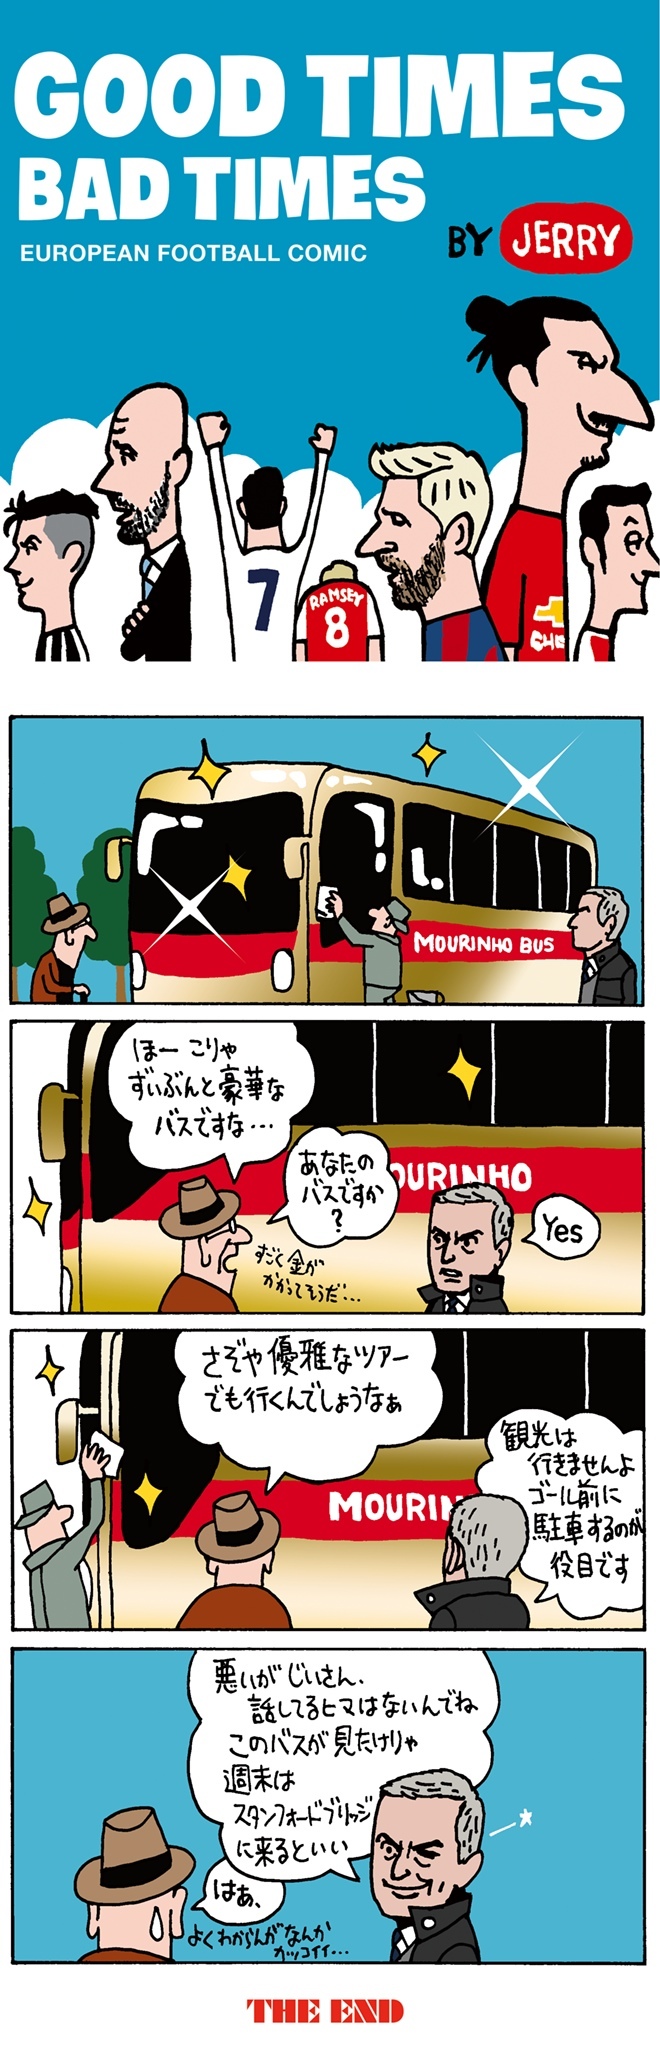 欧州蹴球４コマ漫画 Vol 11 モウリーニョが 豪華なバス をゴール前に駐車 サッカーダイジェストweb